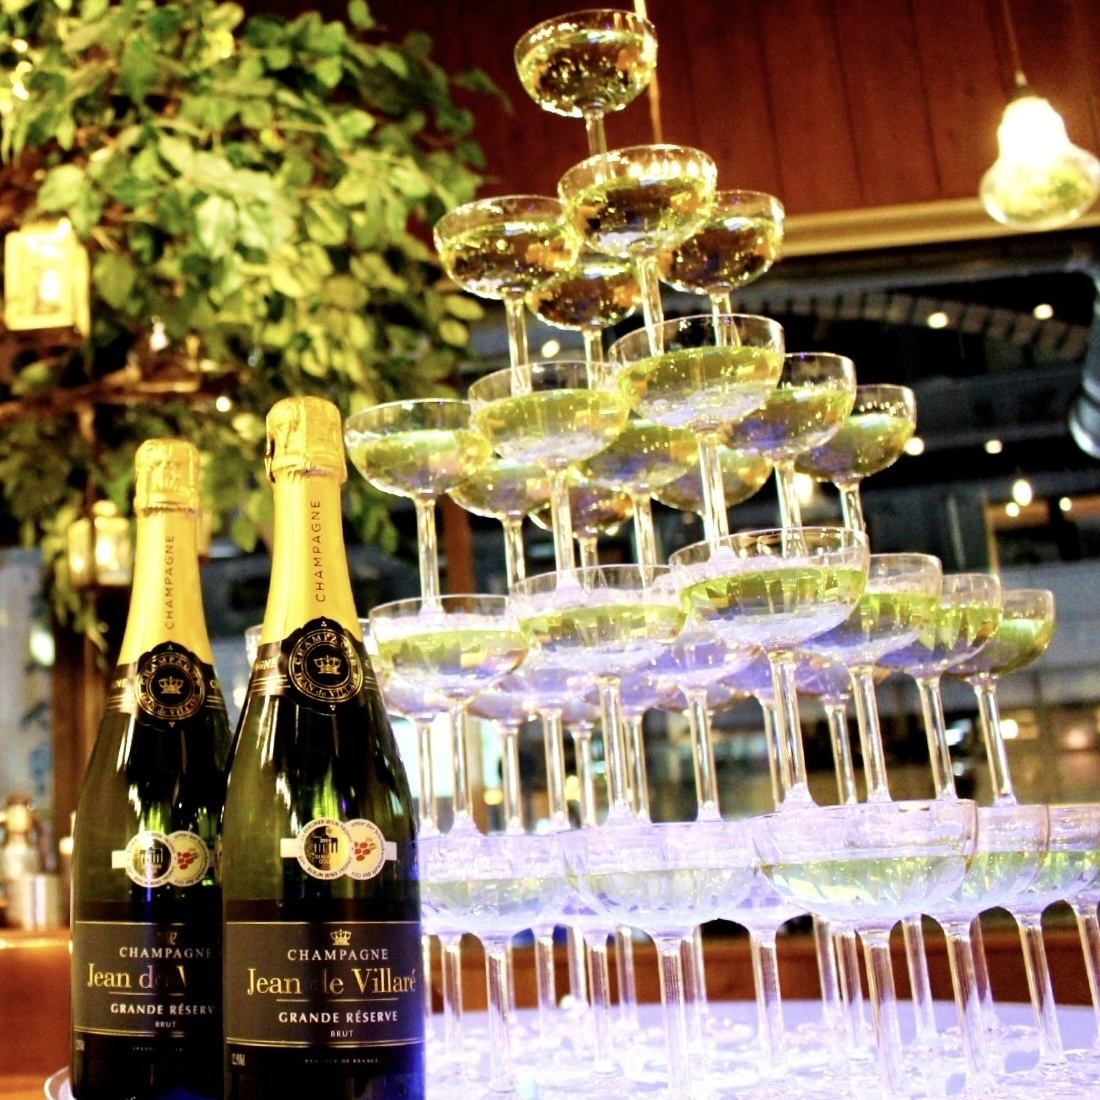 您甚至可以擁有一個香檳塔！還有很多其他選擇可以讓您的私人聚會活躍起來！在澀谷享受您的夜晚！